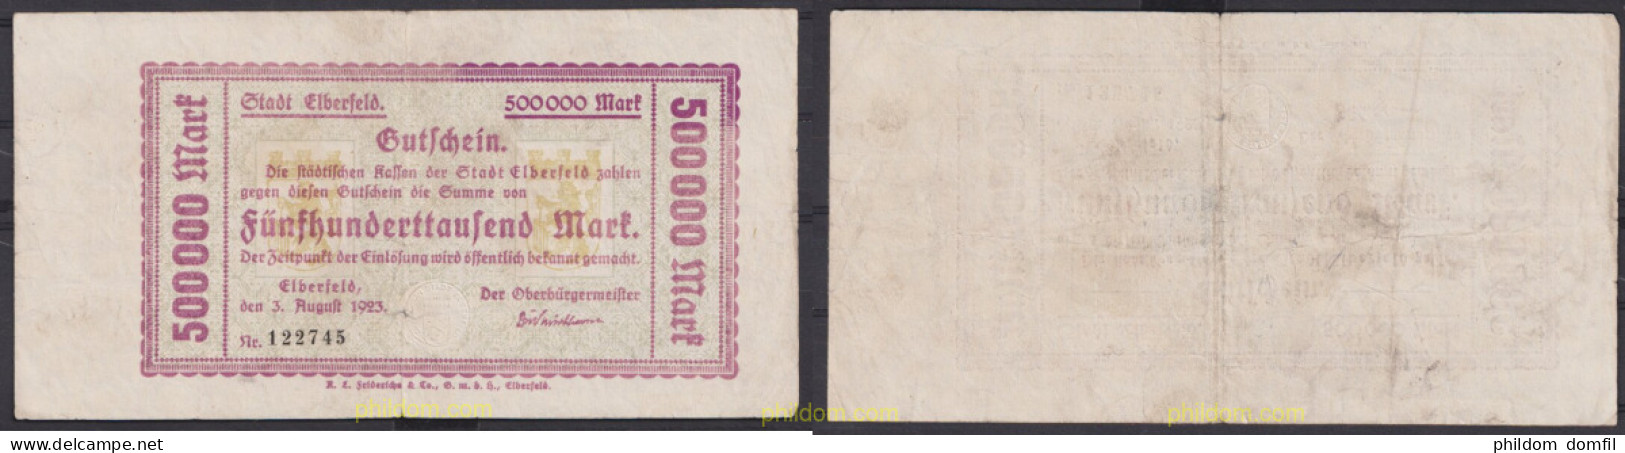 3543 ALEMANIA 1923 GERMANY 500000 MARK 1923 ELBERFELD - Reichsschuldenverwaltung